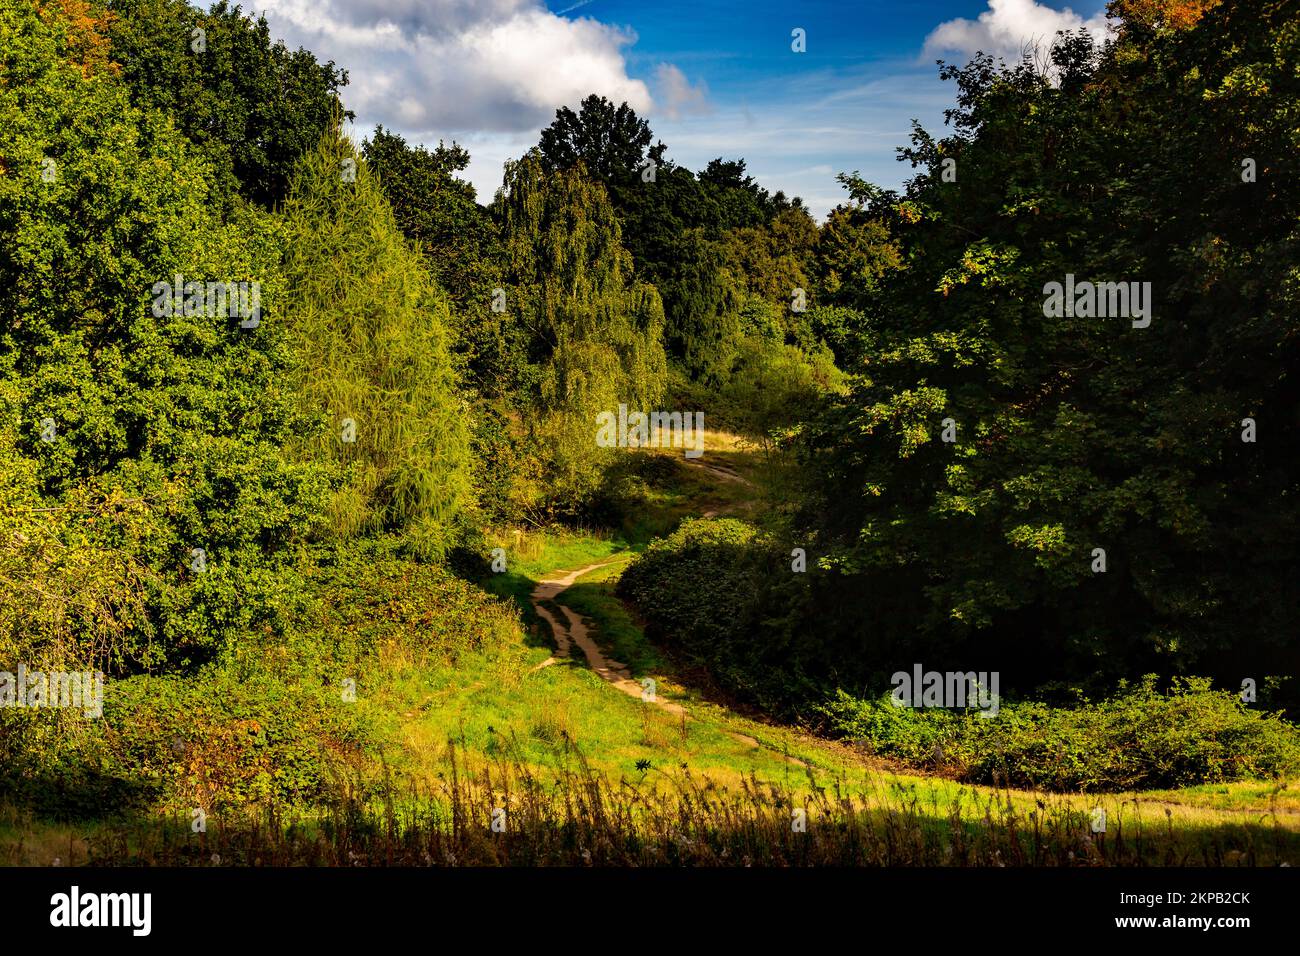 Hampstead Heath a North London occupa un'area enorme e offre belle passeggiate e salite come in questa immagine soleggiata vicino alla famosa vale of Health. Foto Stock